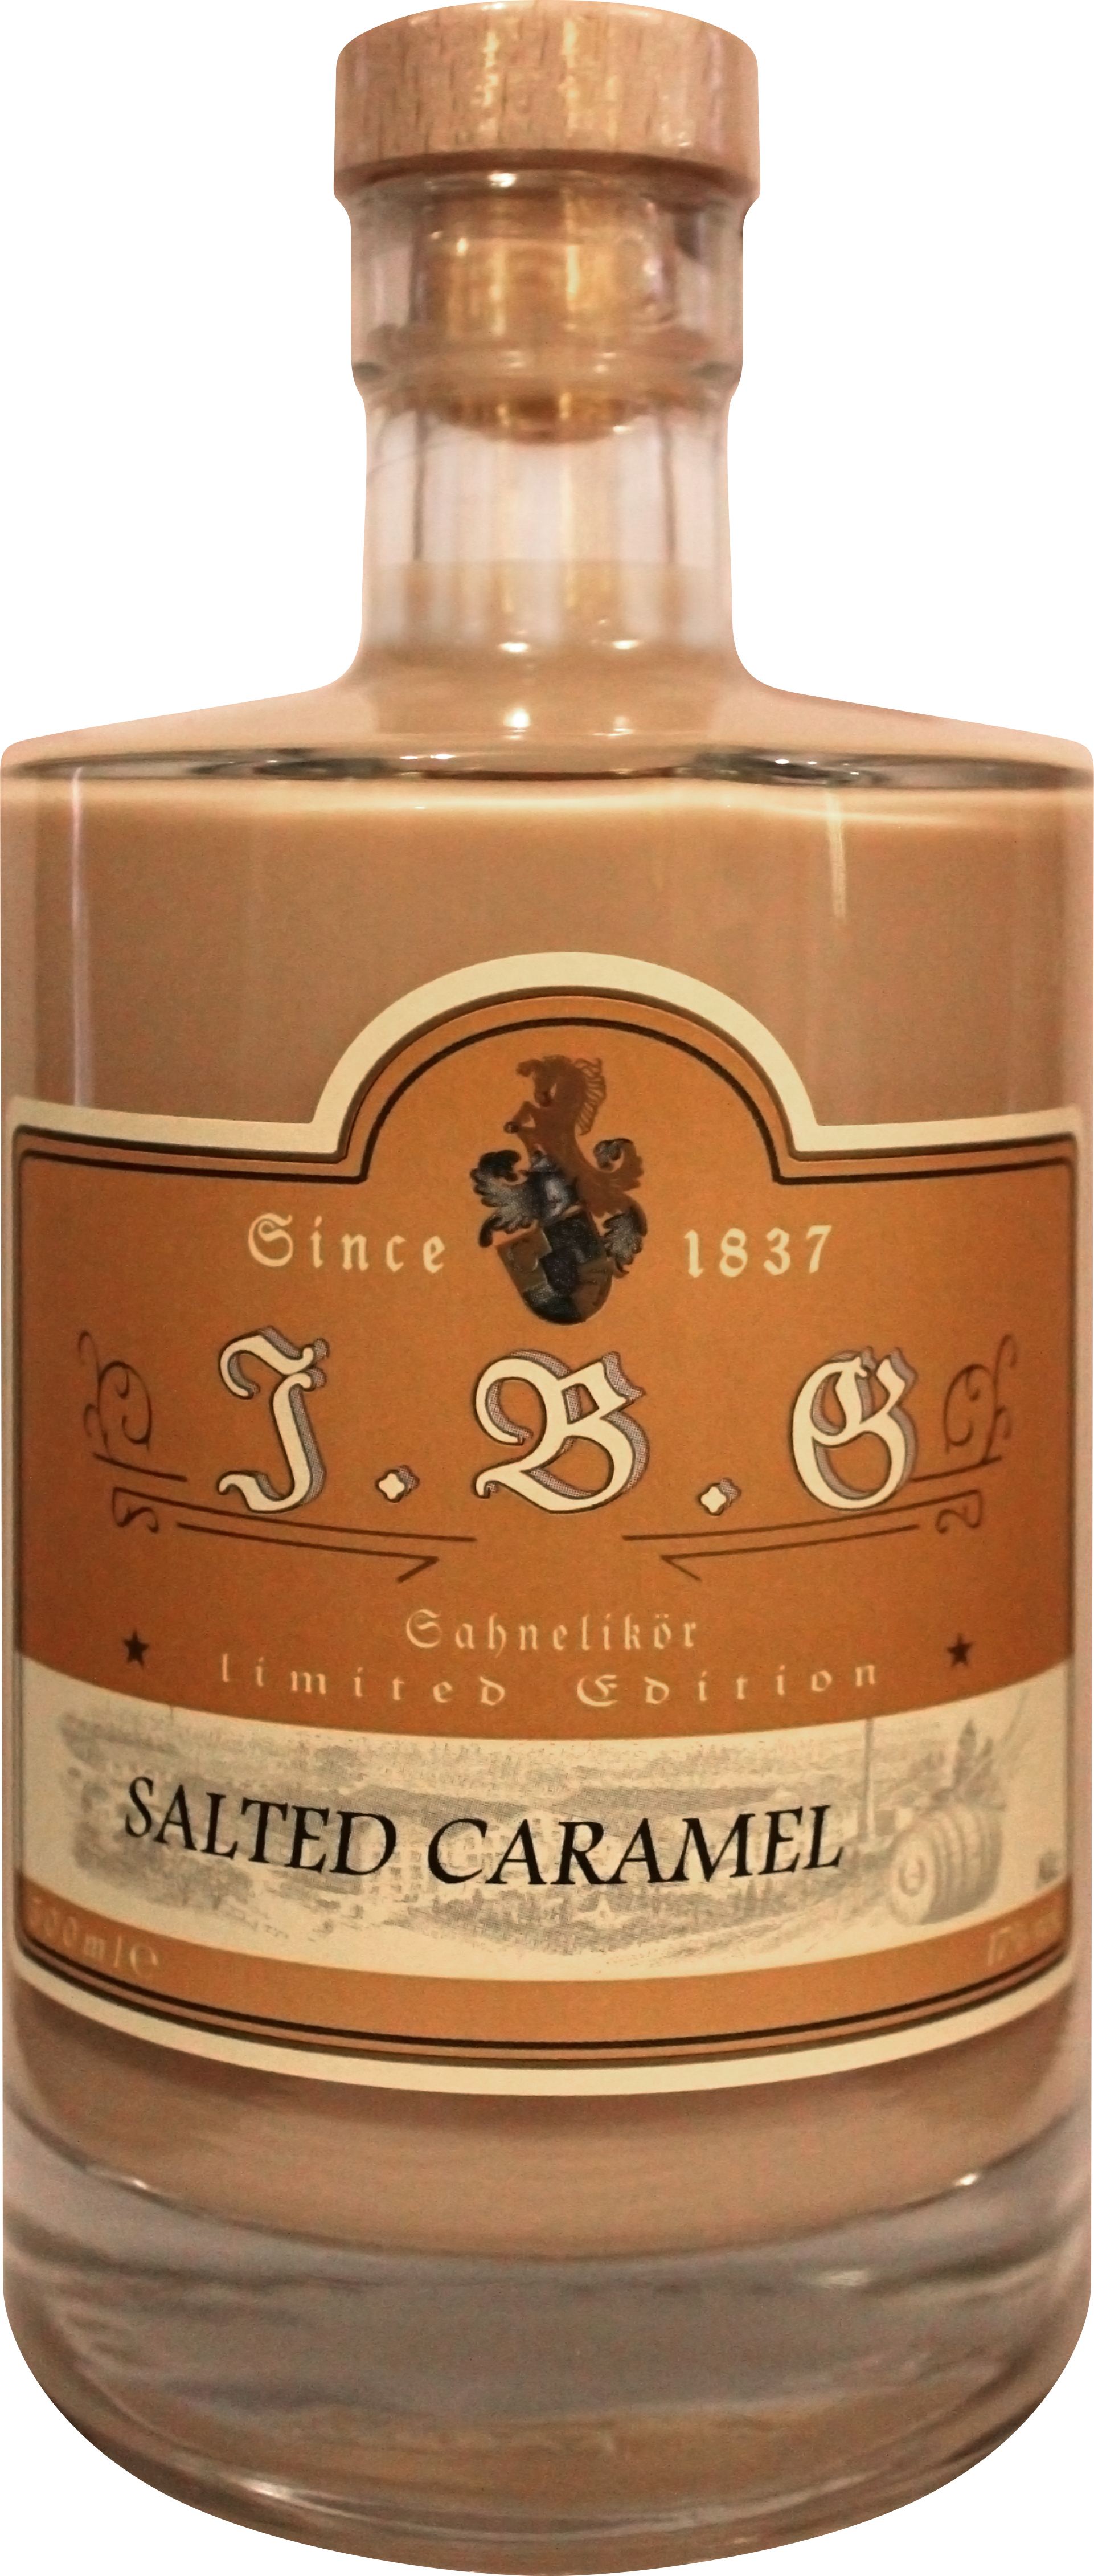 Salted Caramel Sahnelikör 17%vol., 0,5 Geuting | ltr. Gutsbrennerei